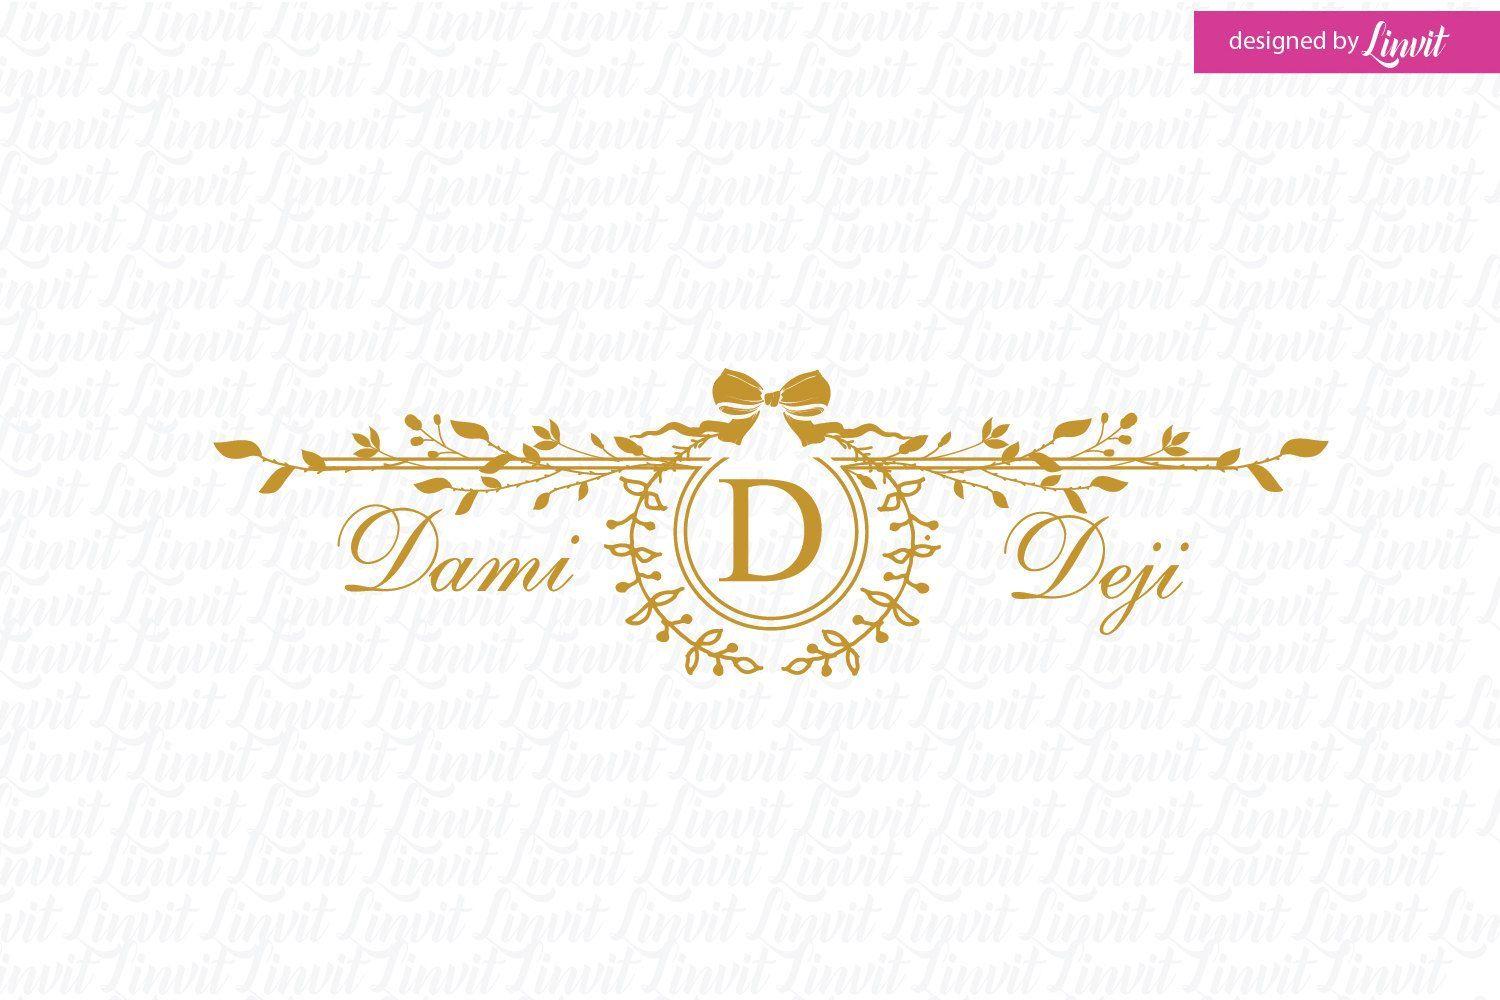 Rustic Wedding Logo - Wedding logo, wedding monogram, custom wedding logo, custom wedding ...